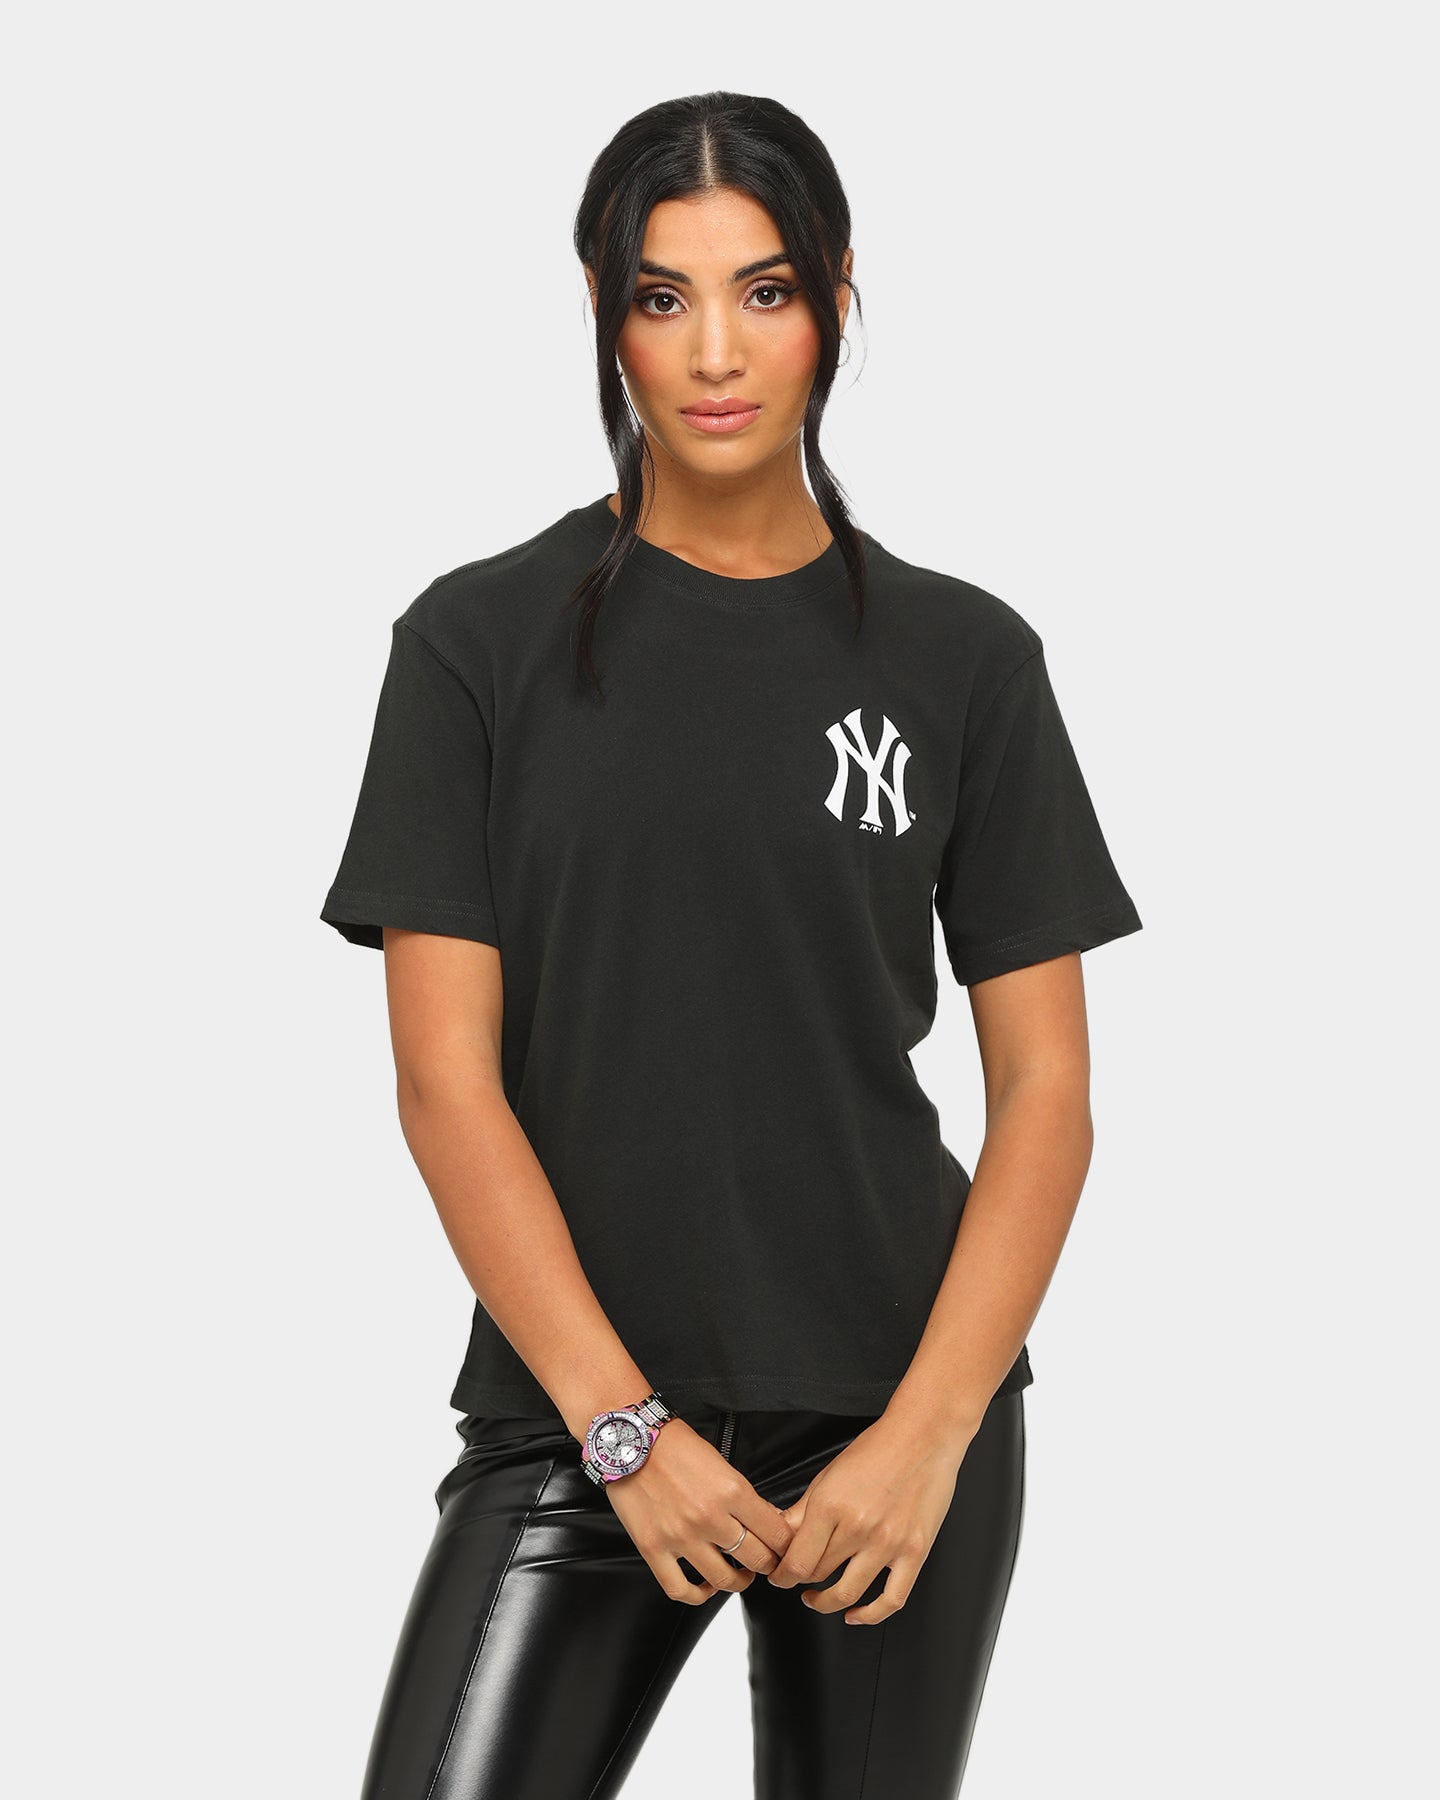 new york yankees shirt womens